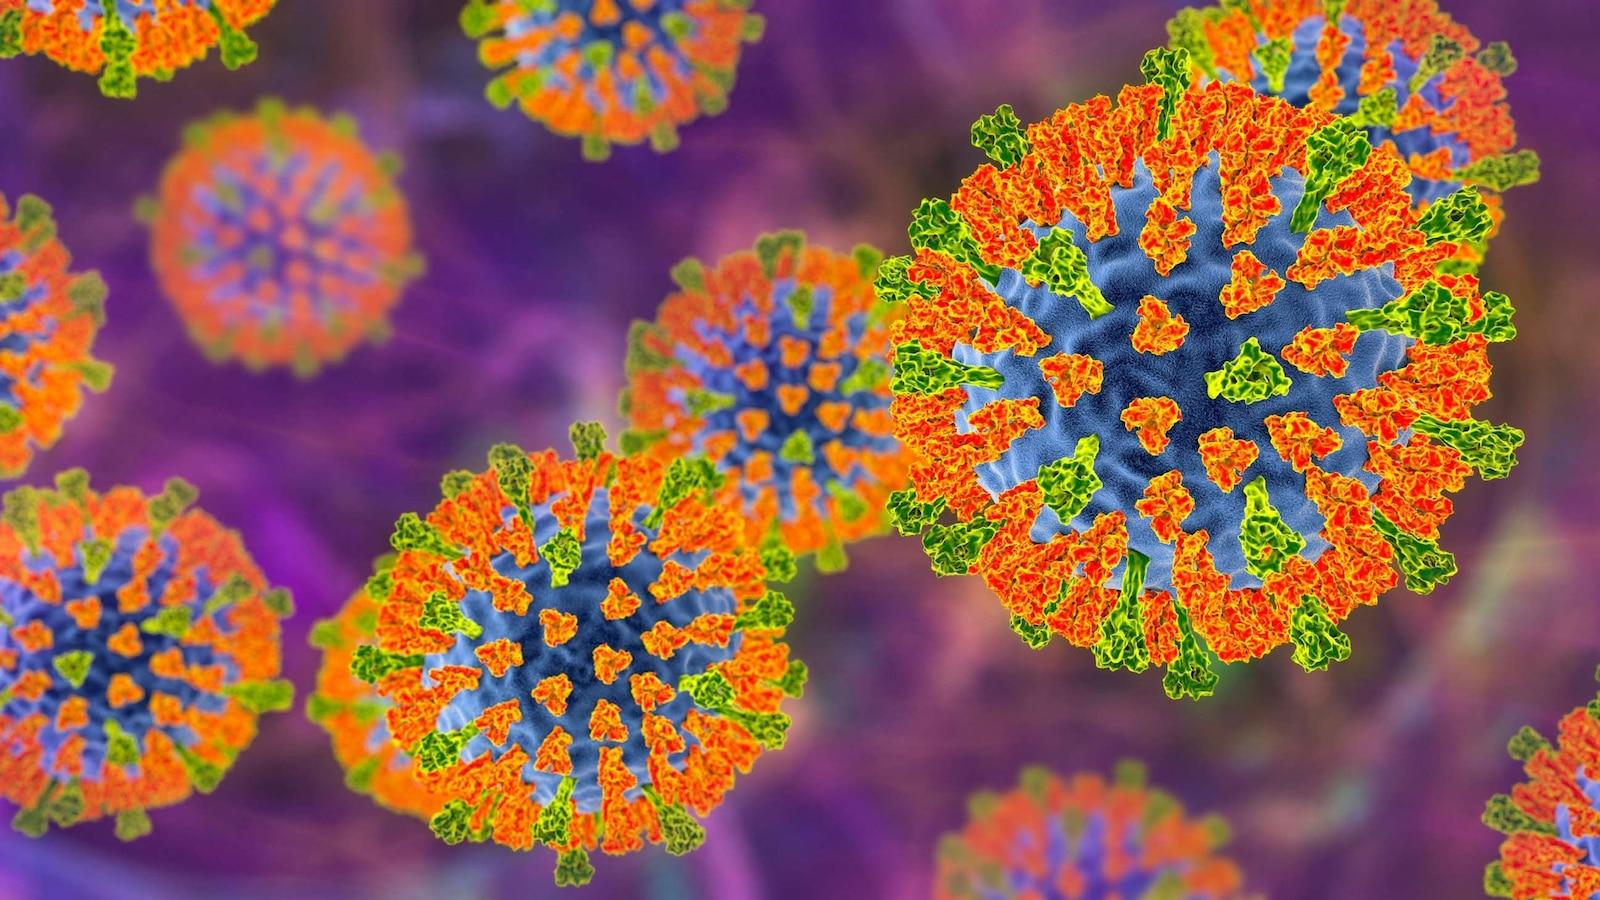 measles-virus-gty-thg-230622_1687446863807_hpMain_4_16x9.jpg